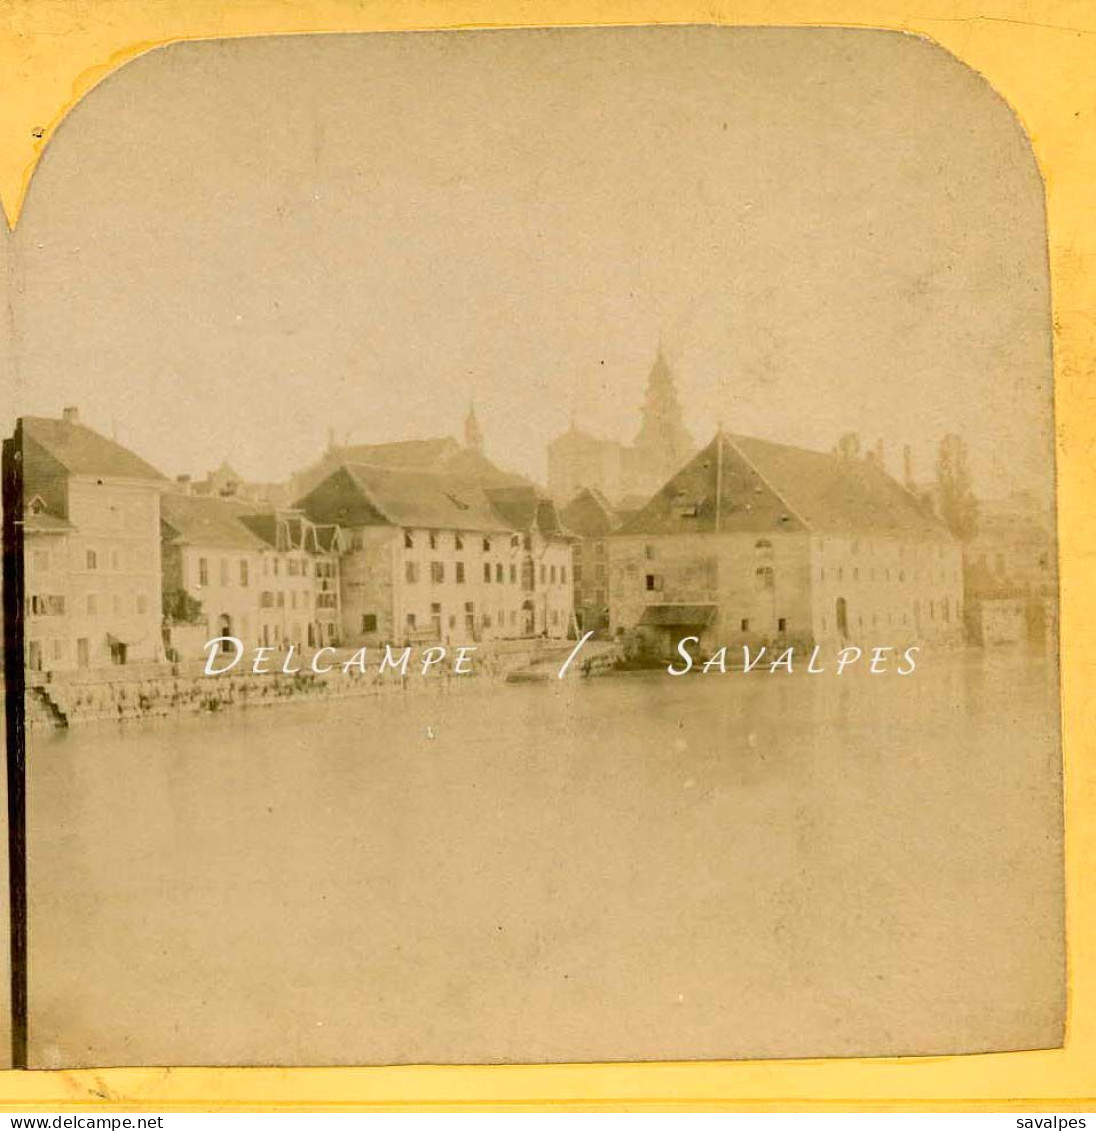 Suisse * Solothurn, Soleure Bords De L’Aar * Photo Stéréoscopique Bertrand Vers 1858 - Stereoscopic